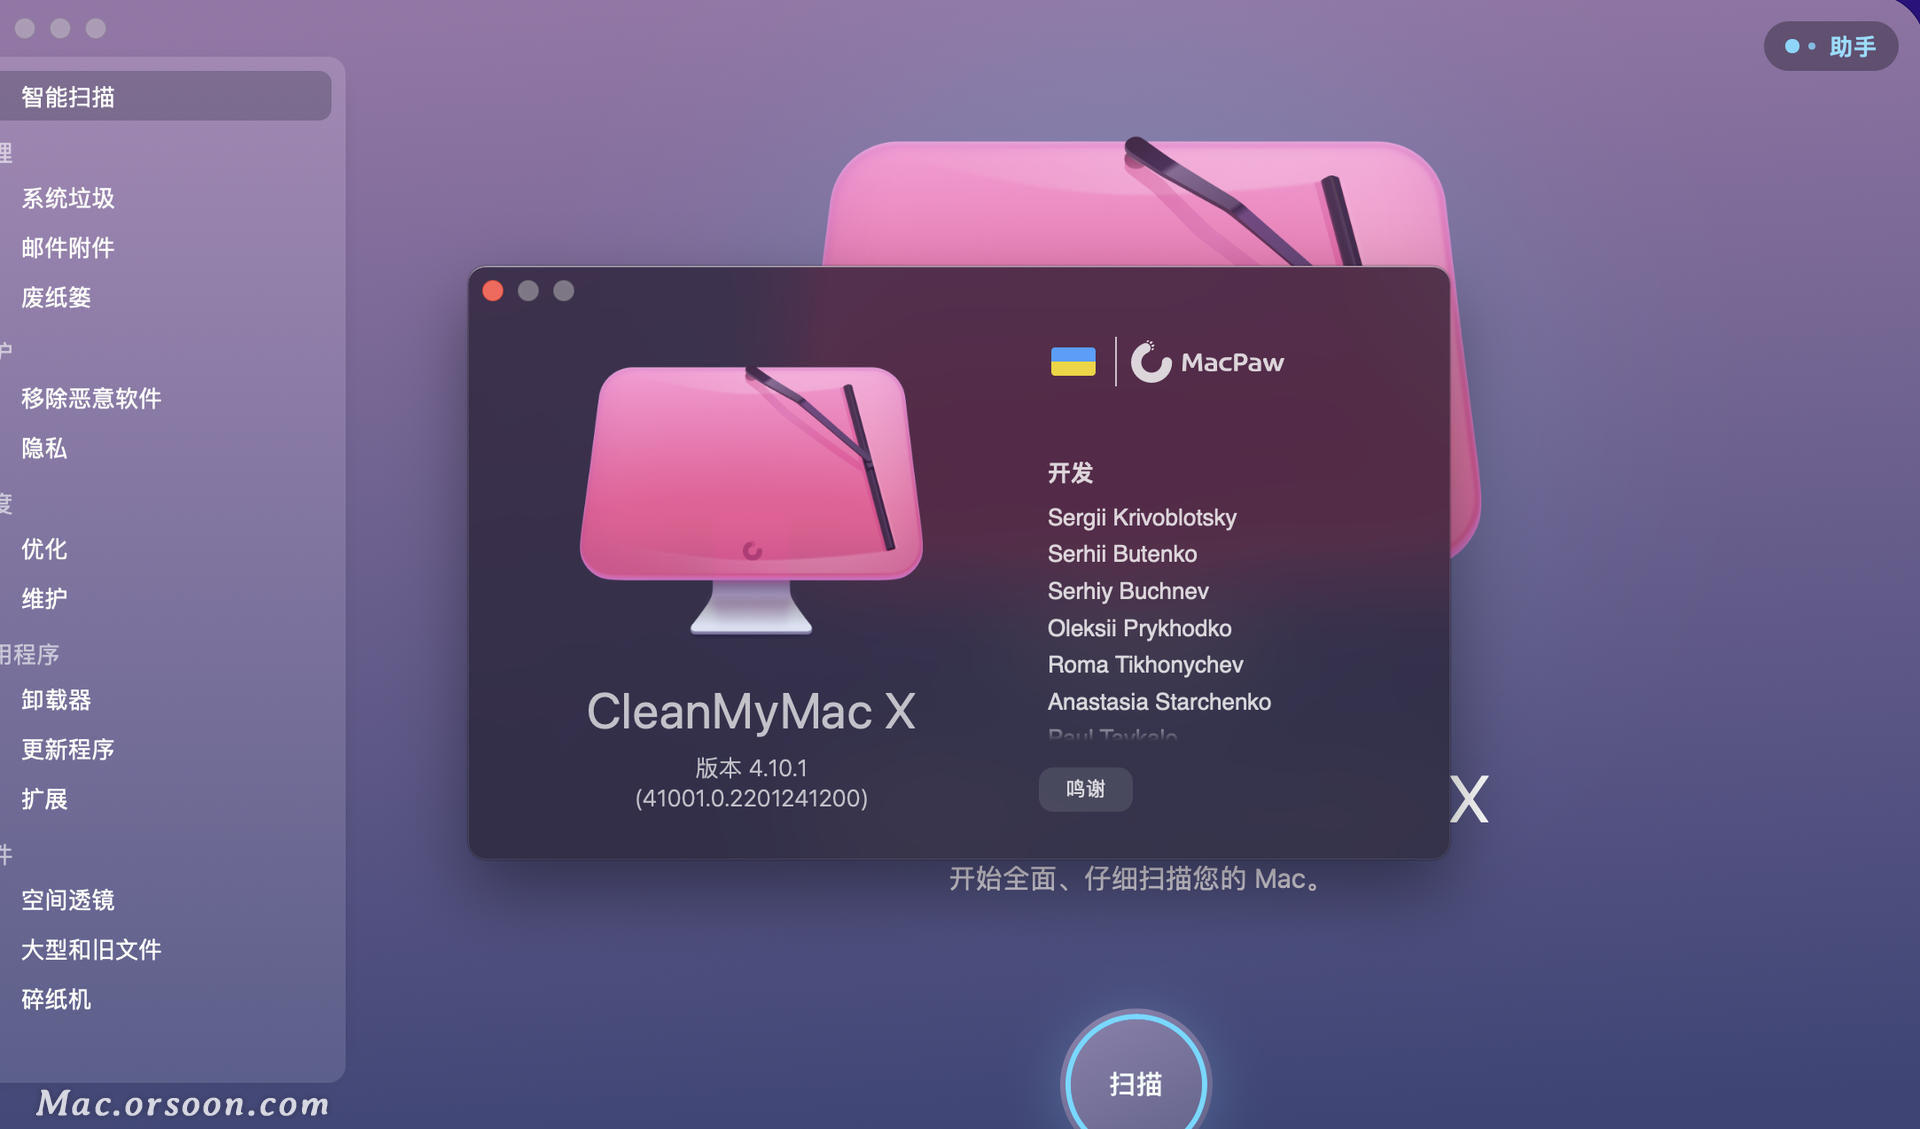 cleanmymac x for mac（mac专业系统清理）兼容12个系统